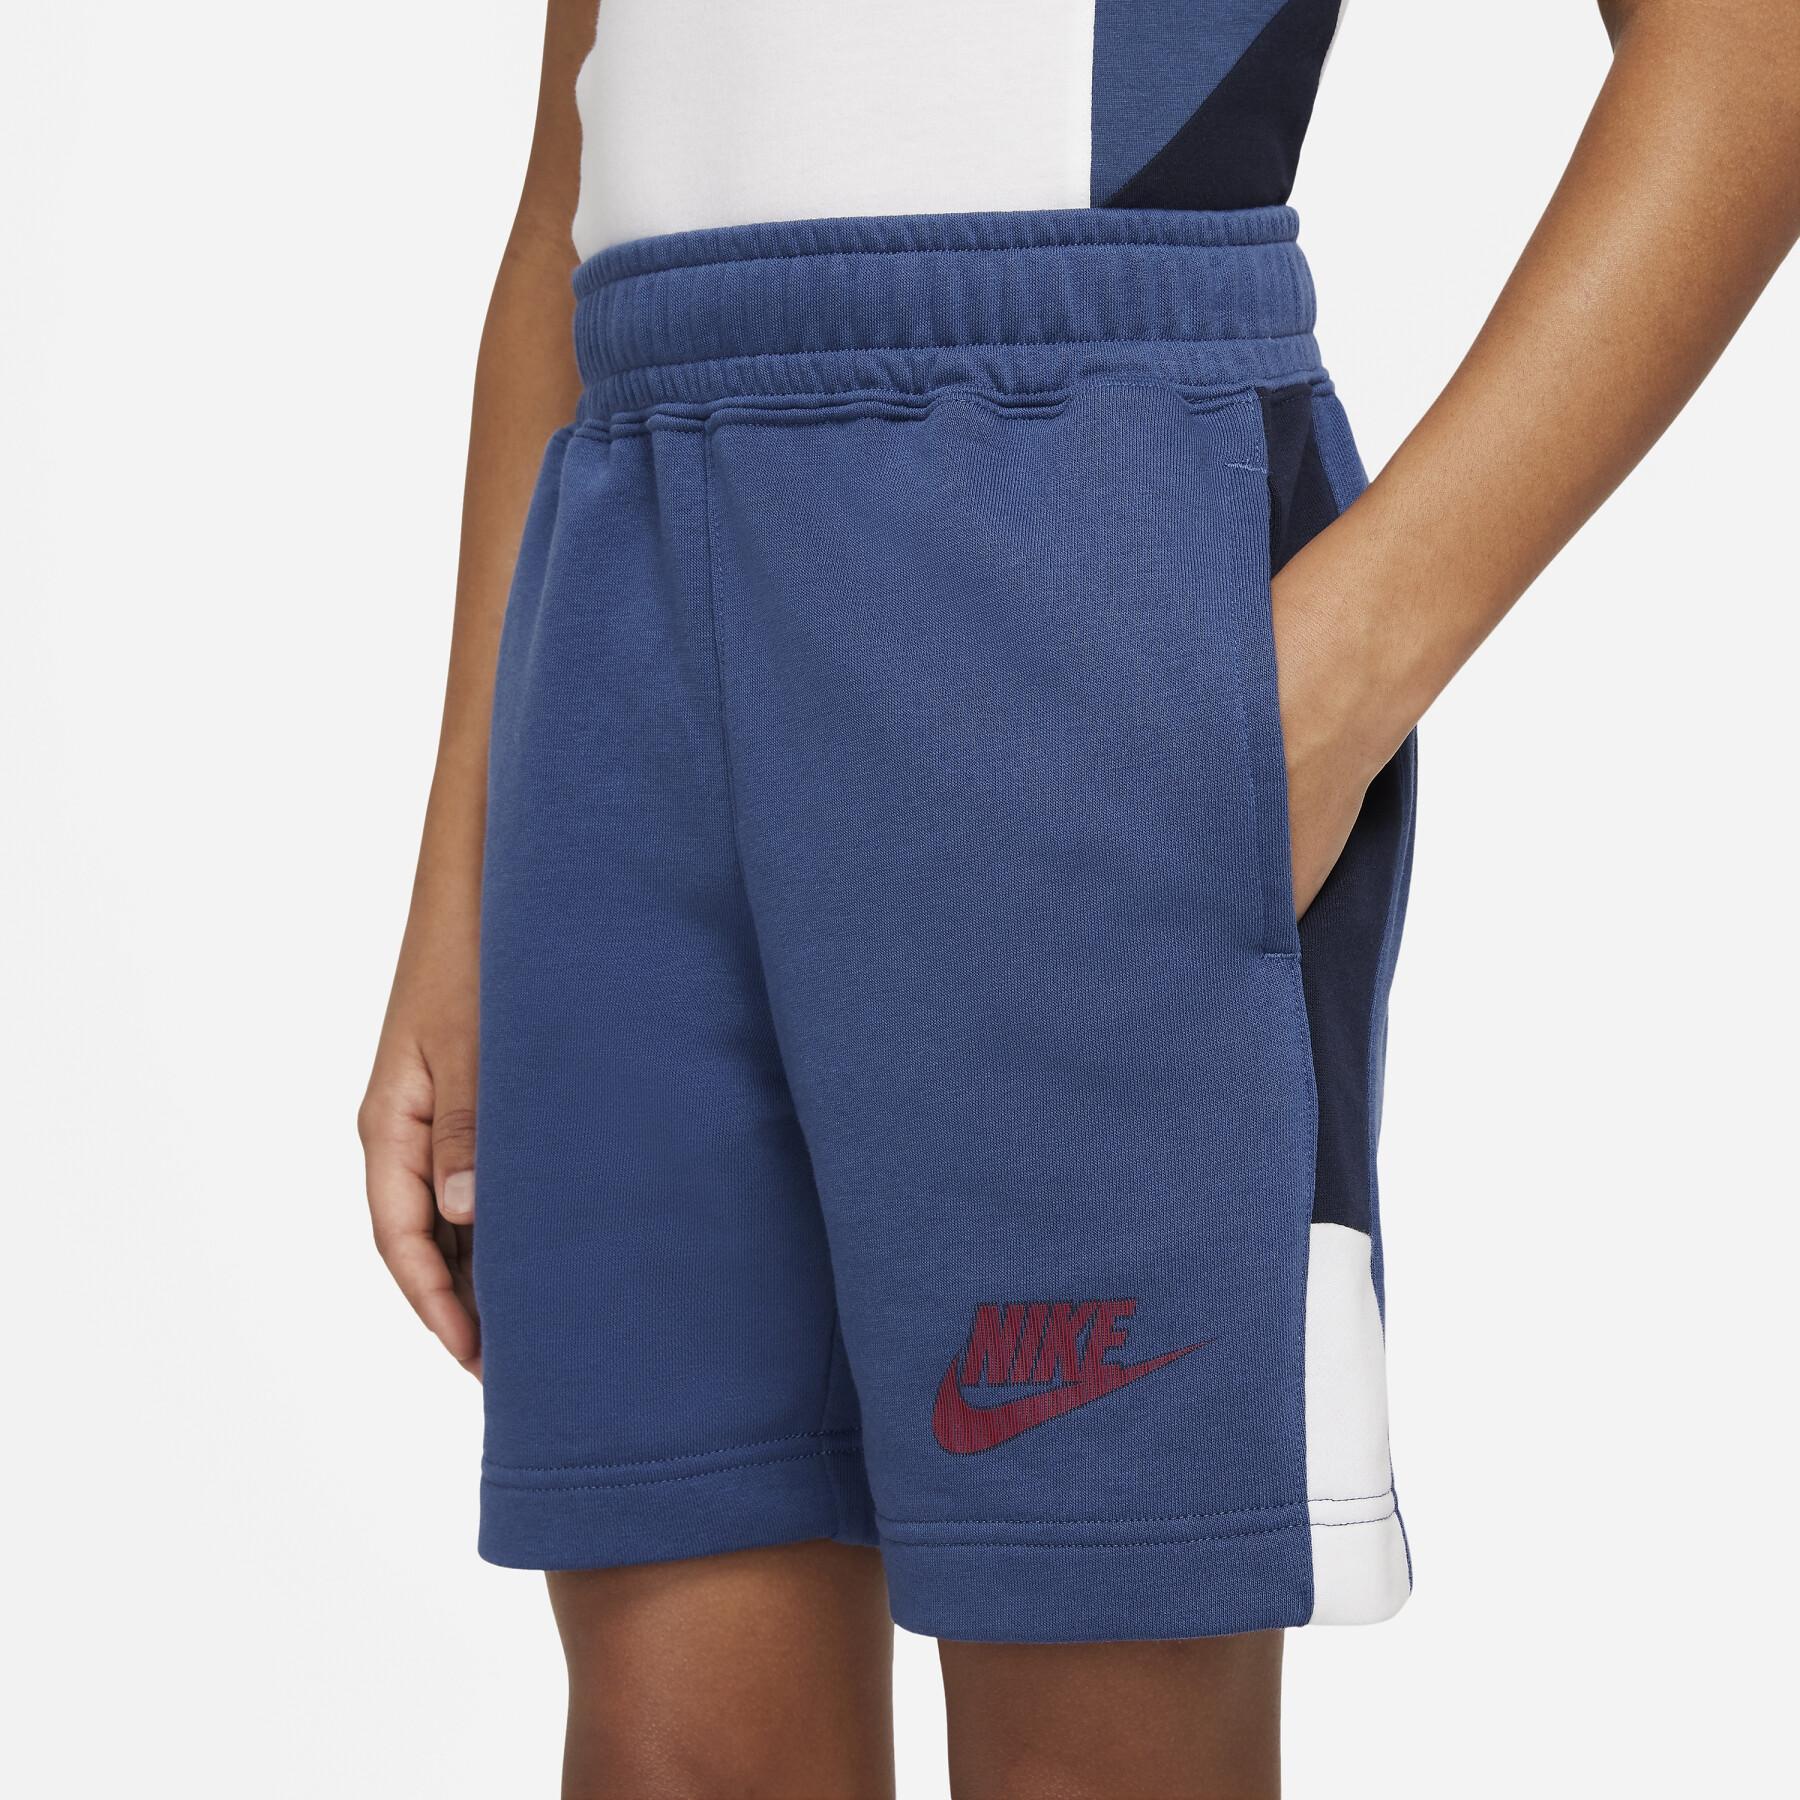 Children's shorts Nike Hybrid